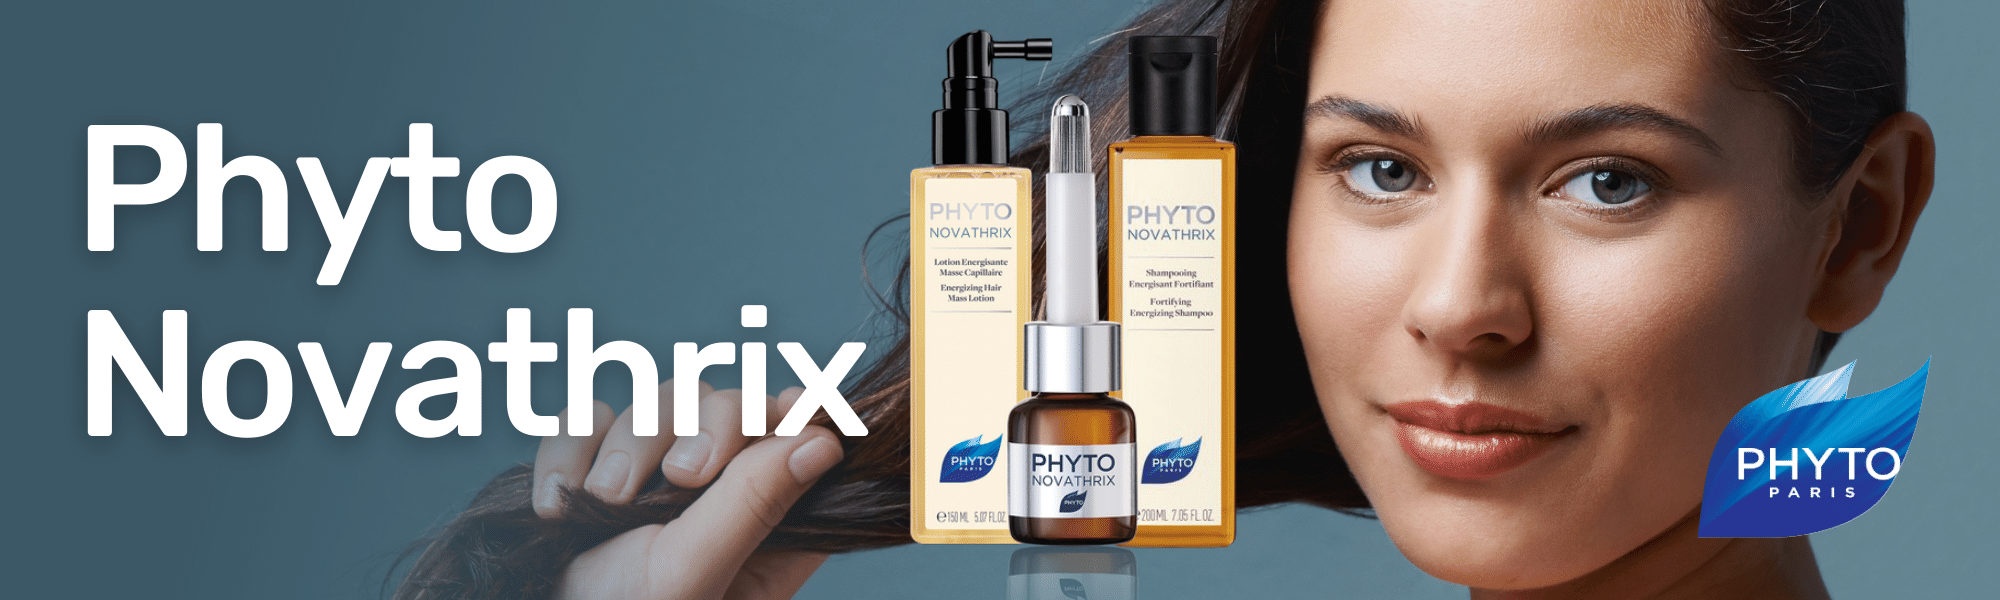 Phytonovathrix Fiale e Shampoo